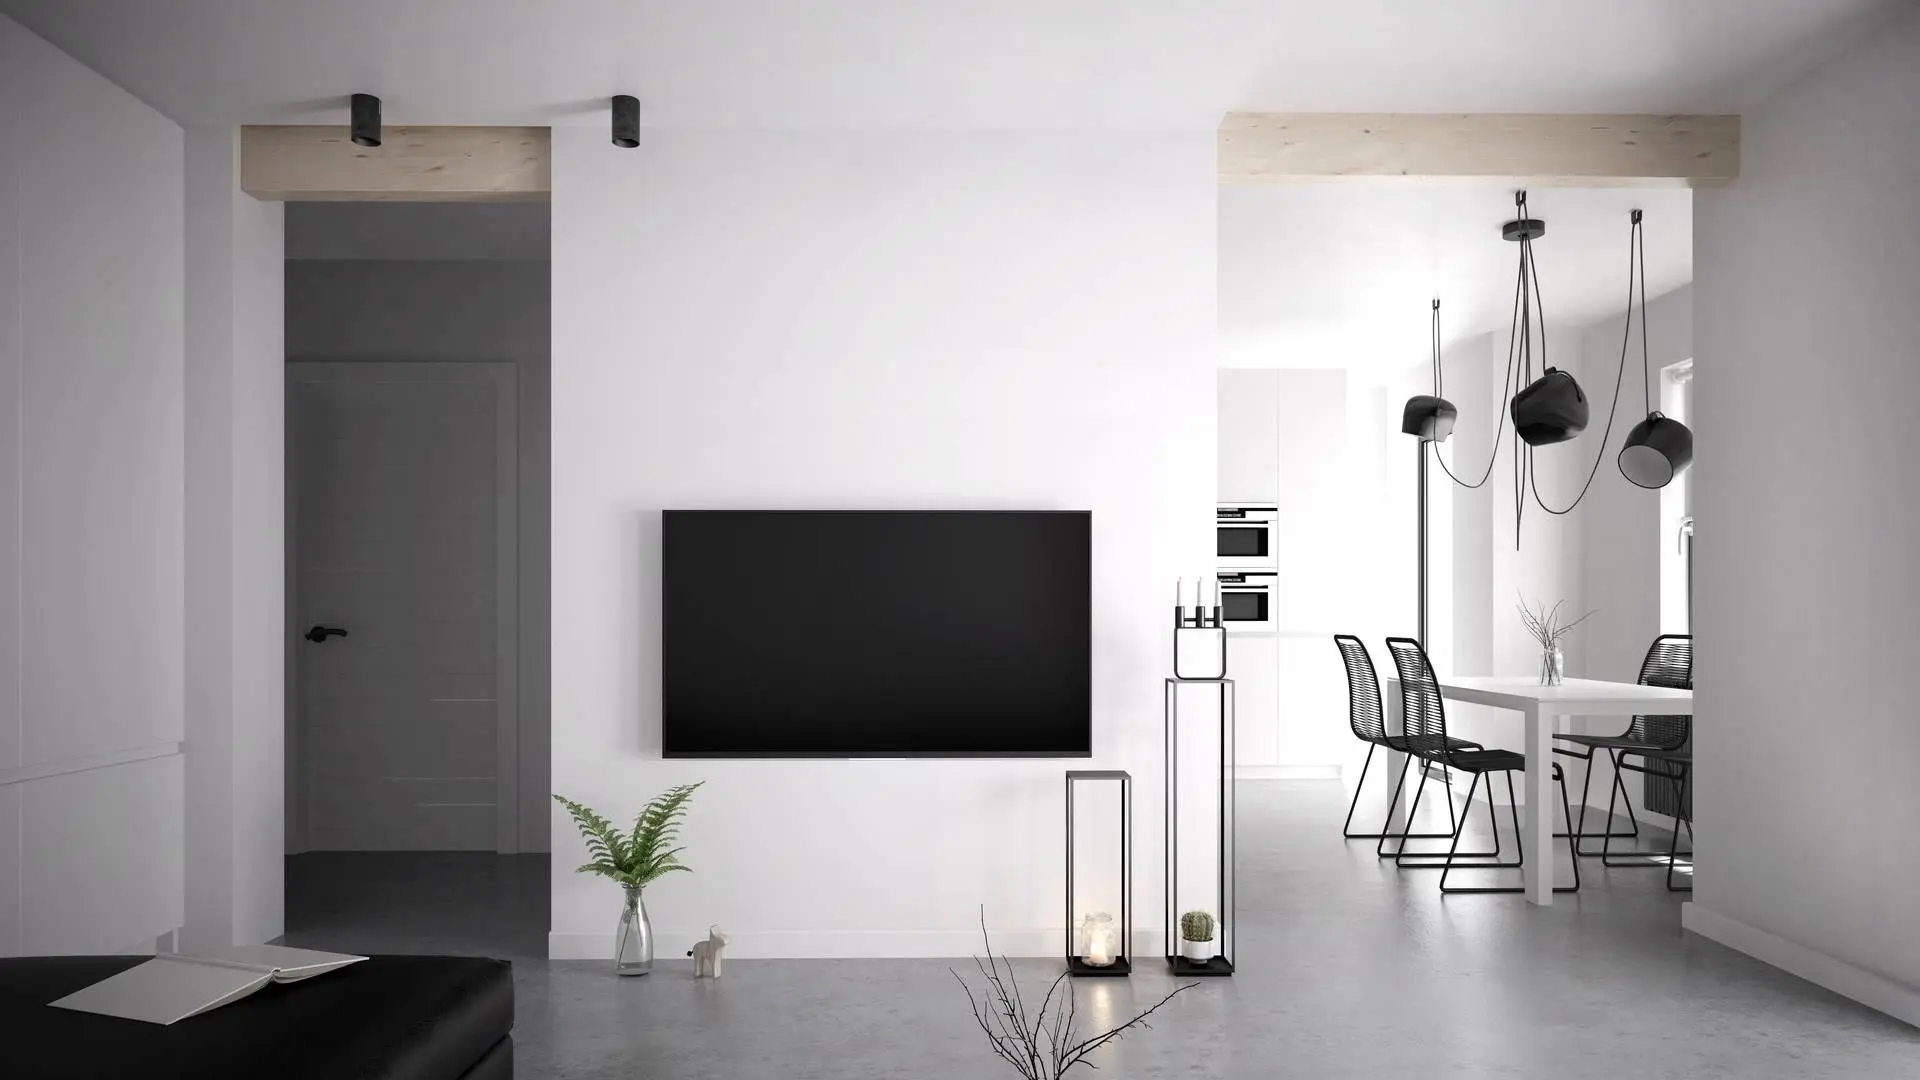 Bývanie s minimalistickou výzdobou a mikrocementom na podlahe